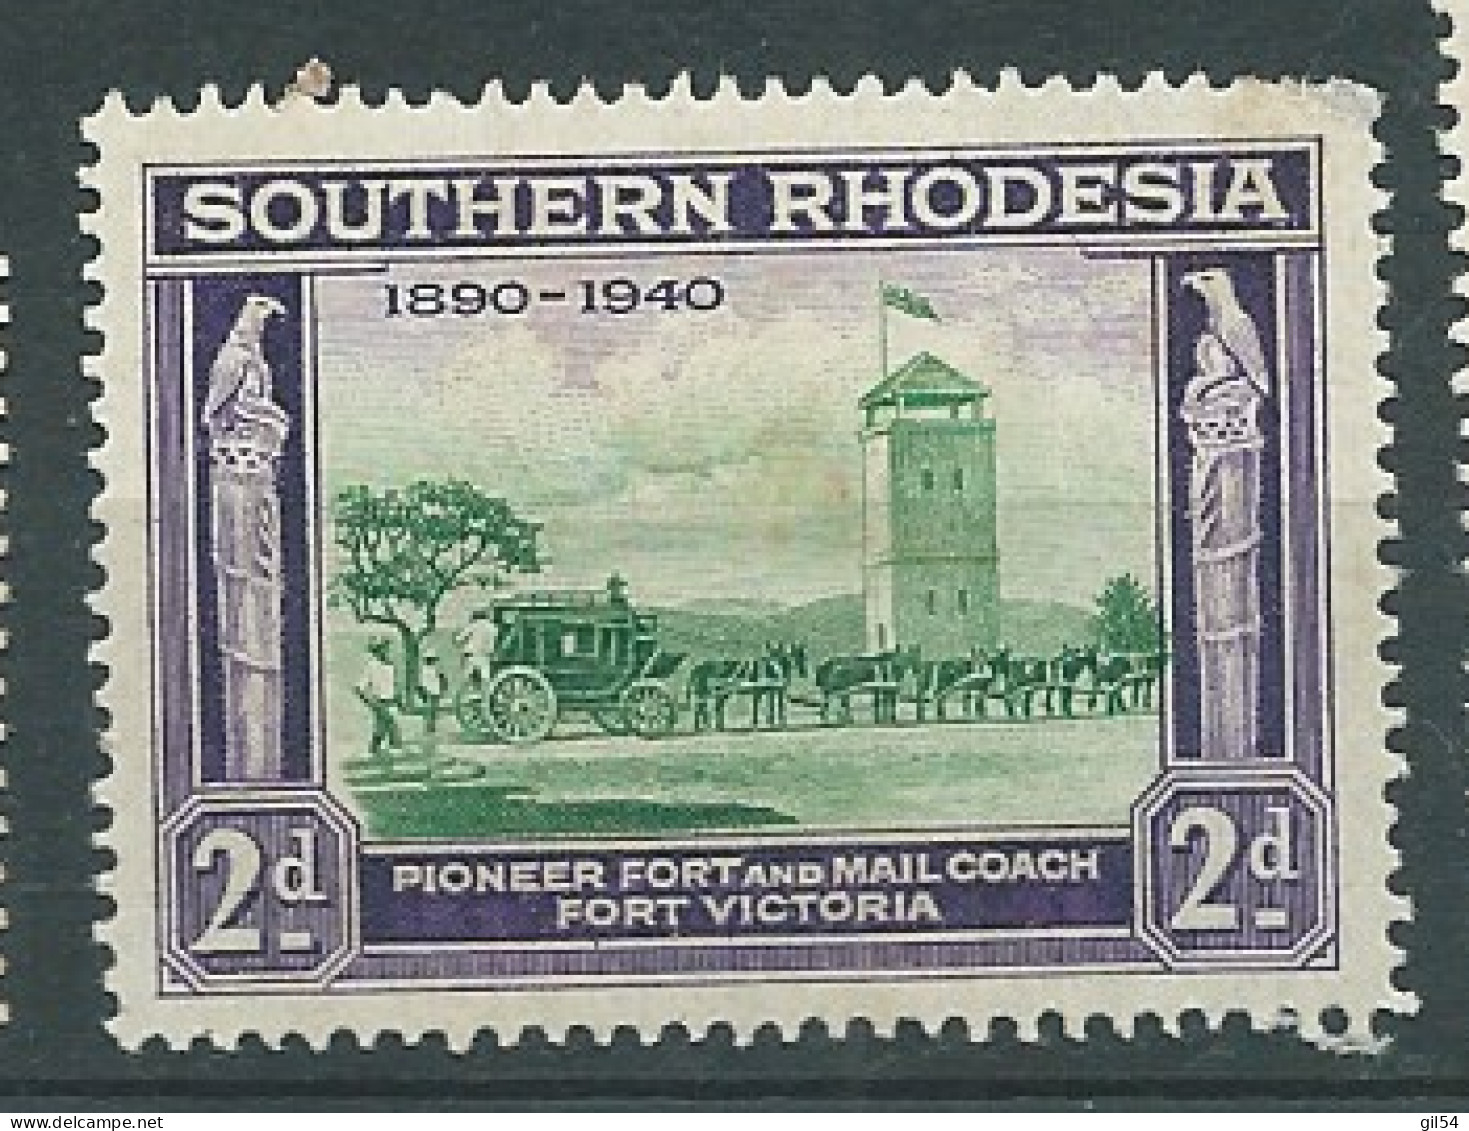 Rhodésie Du Sud   - Yvert N° 57 * - Pal 11934 - Southern Rhodesia (...-1964)